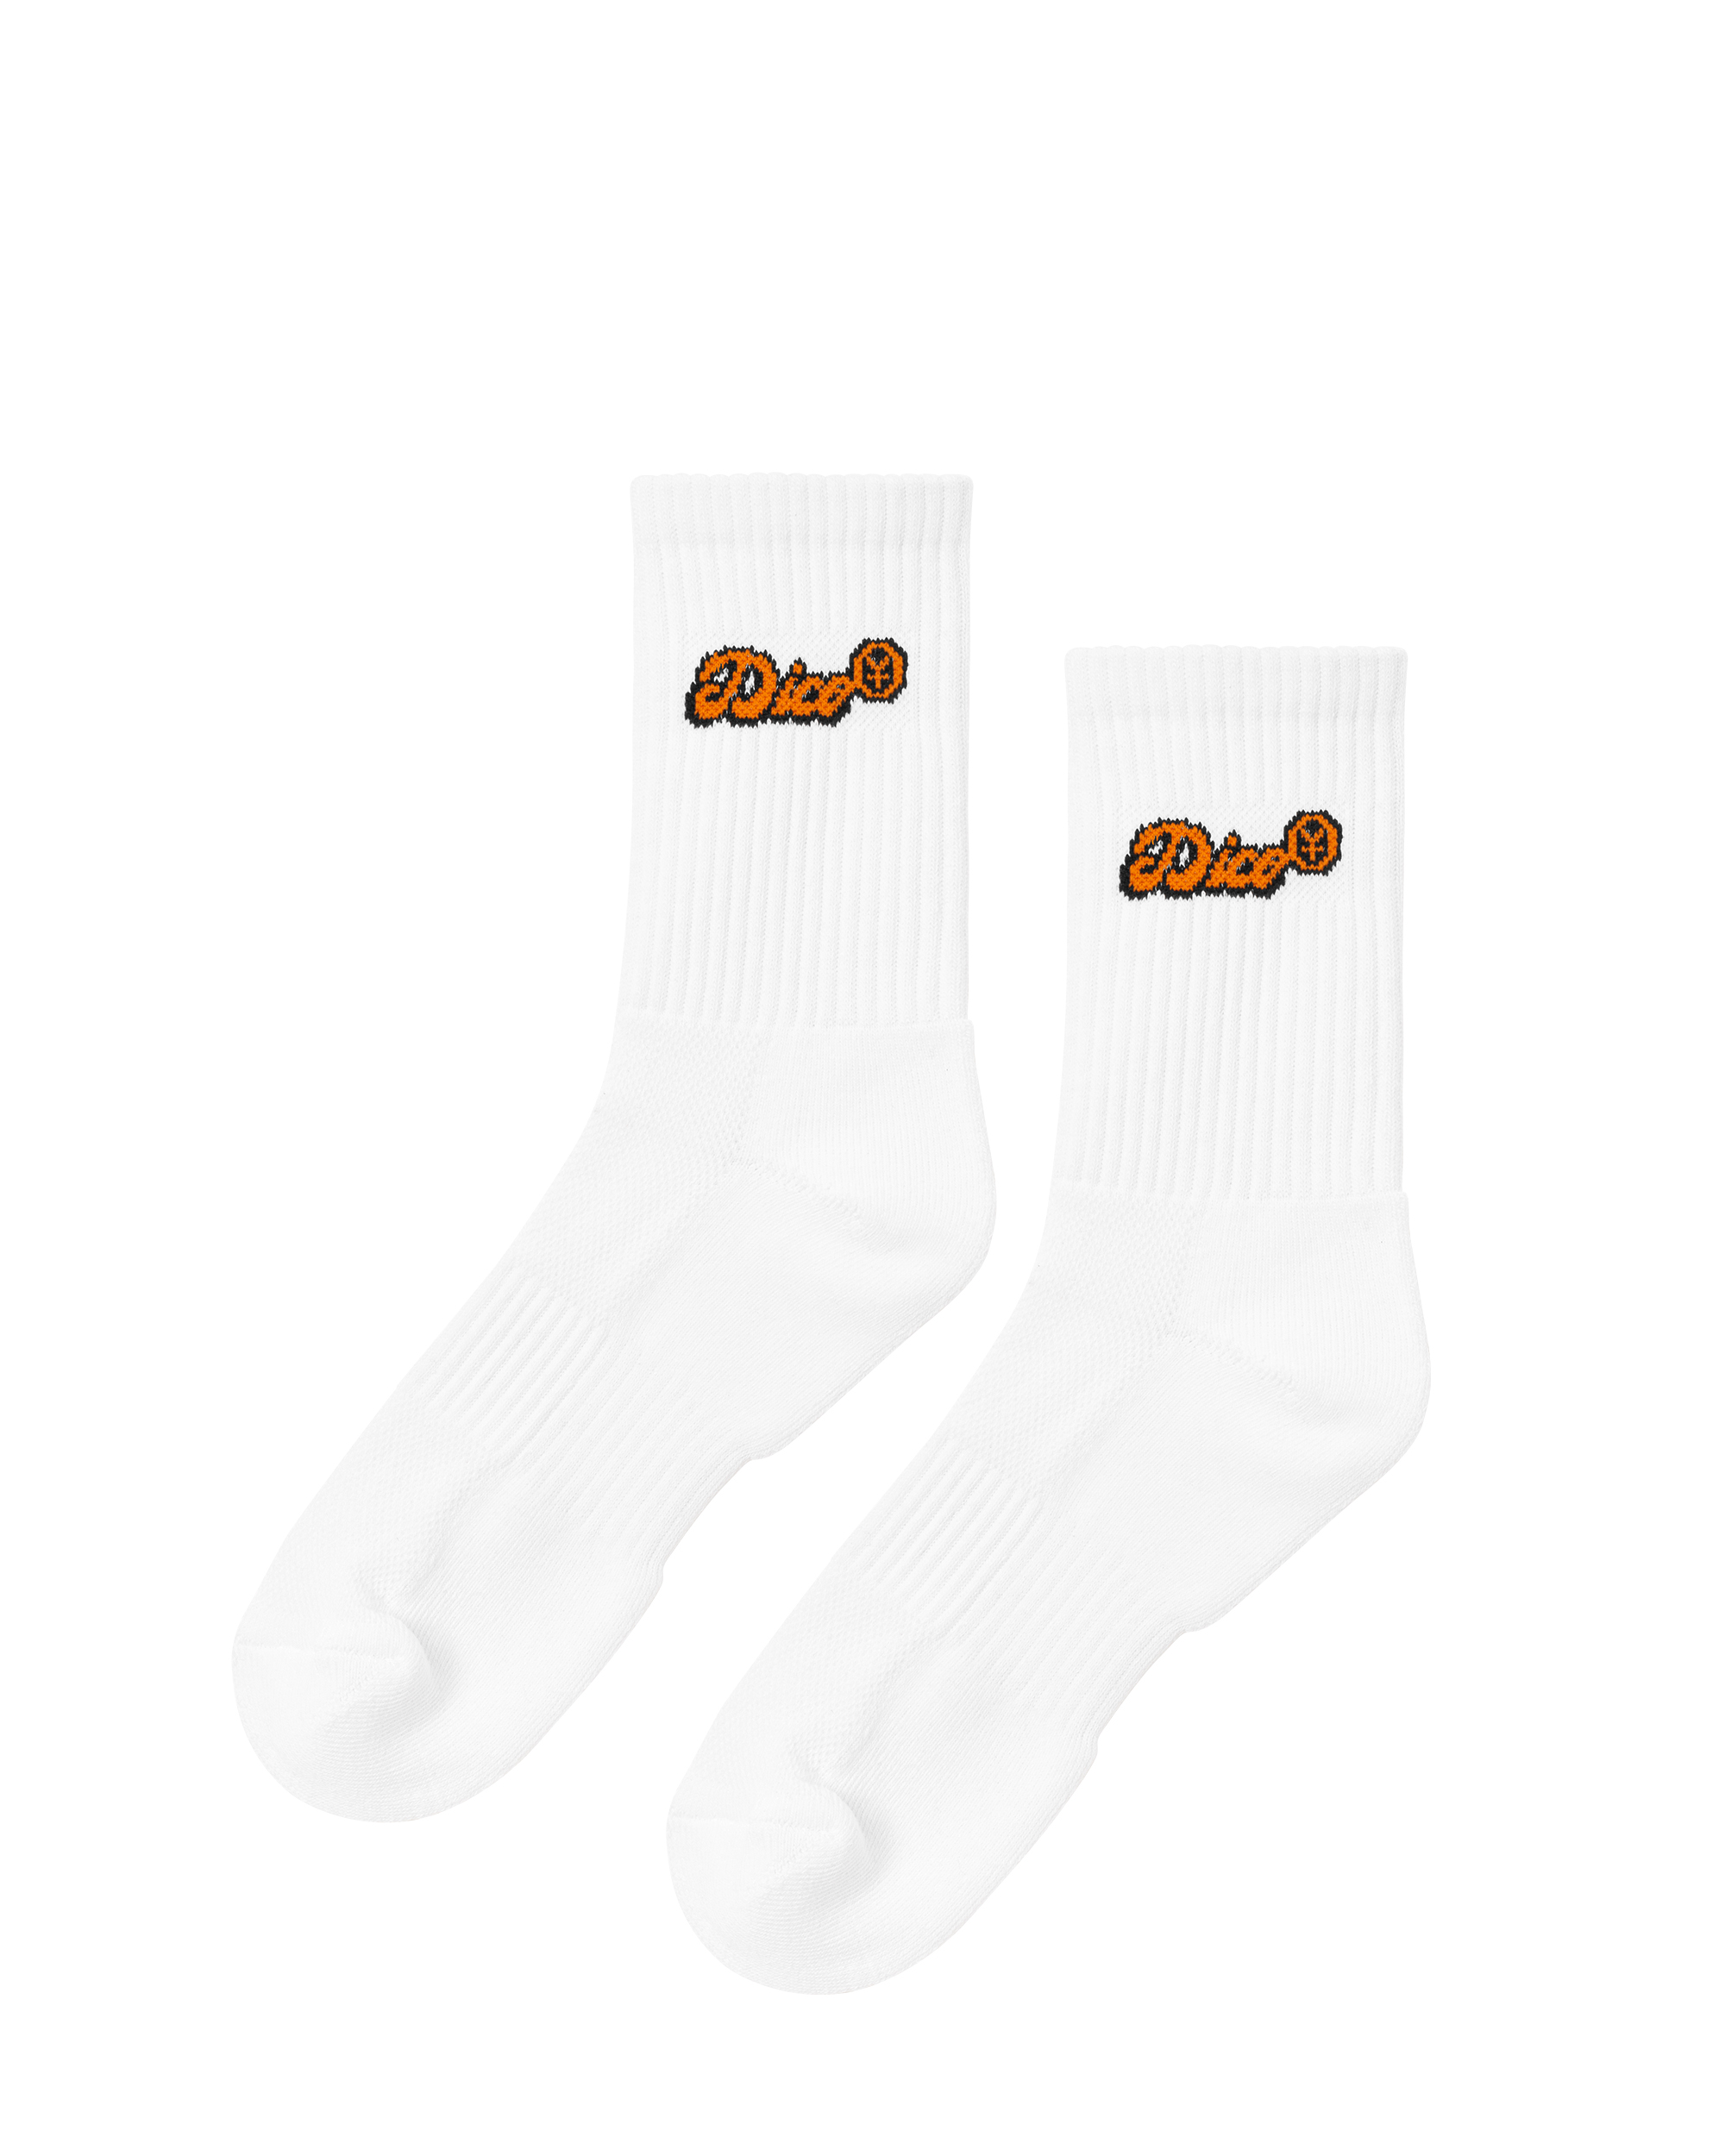 Dico Comfy Socks - Orange/White